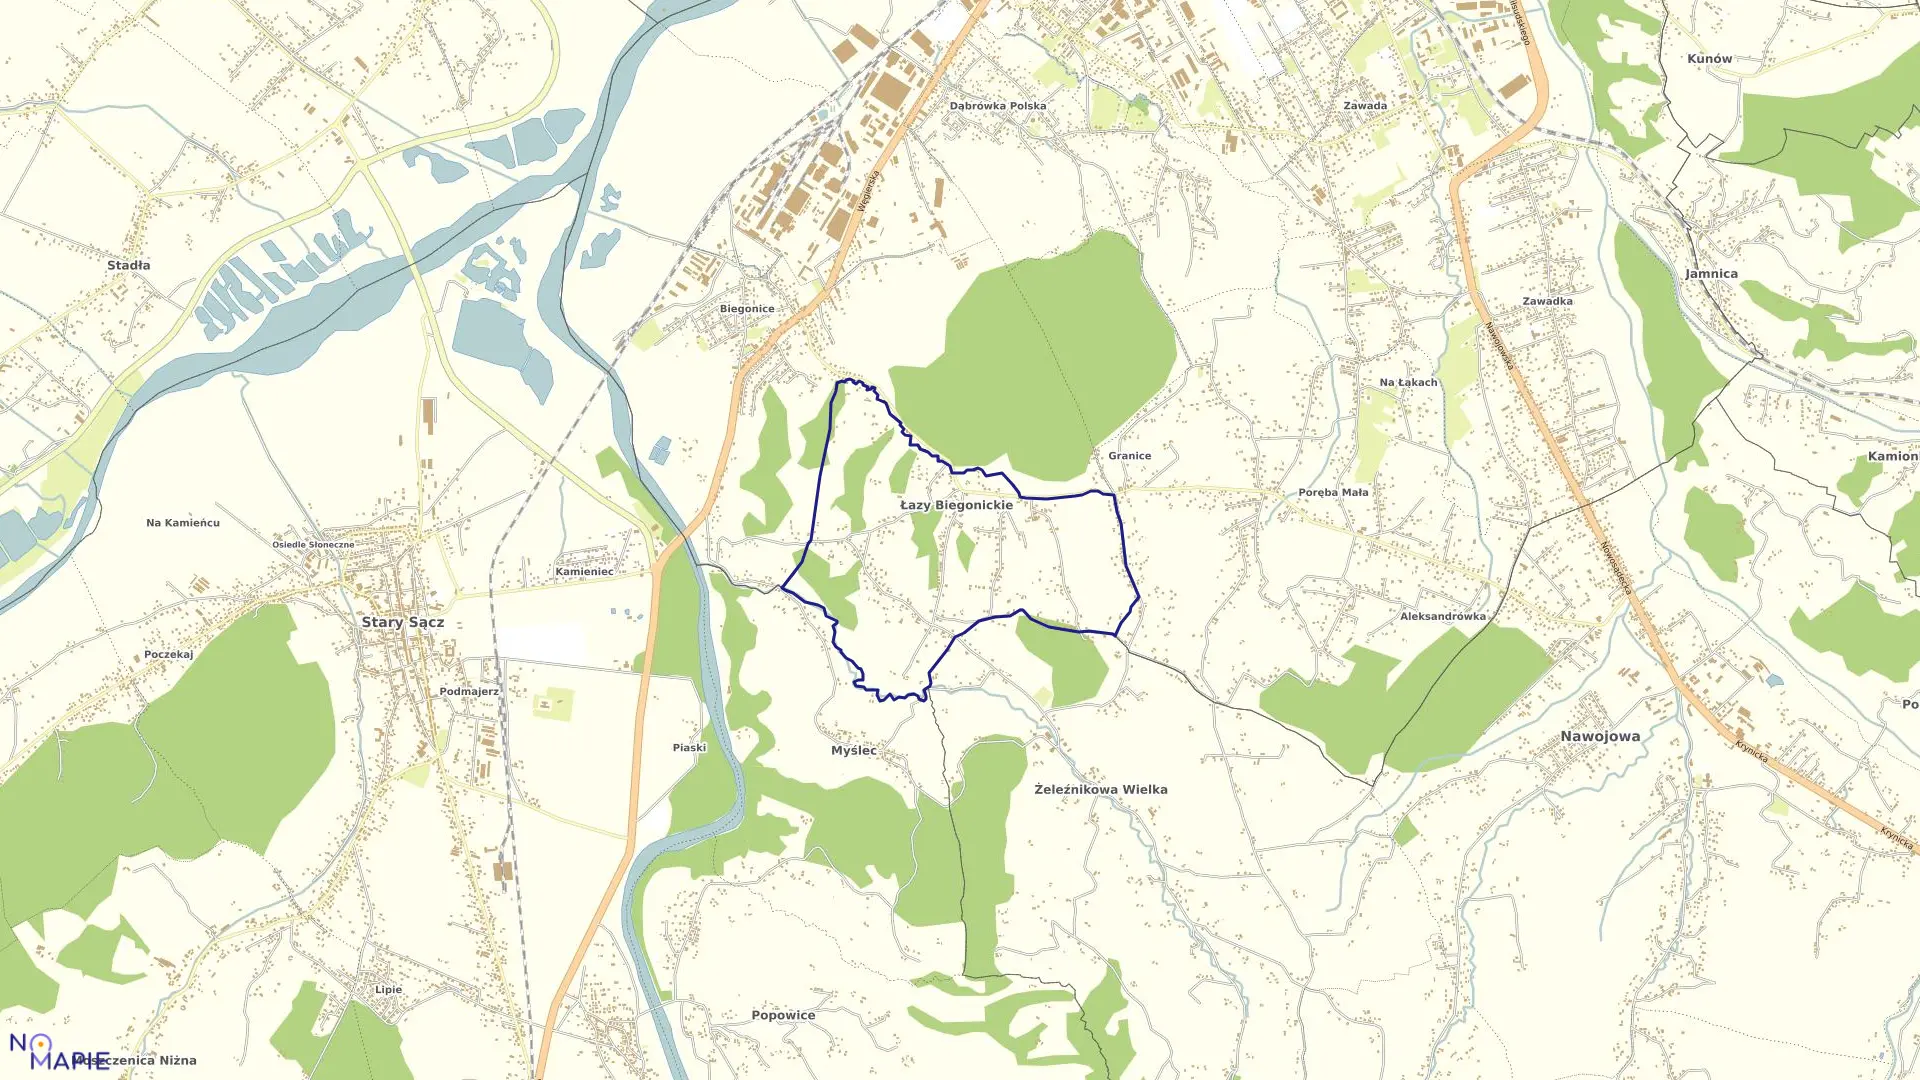 Mapa obrębu Łazy Biegonickie w gminie Stary Sącz